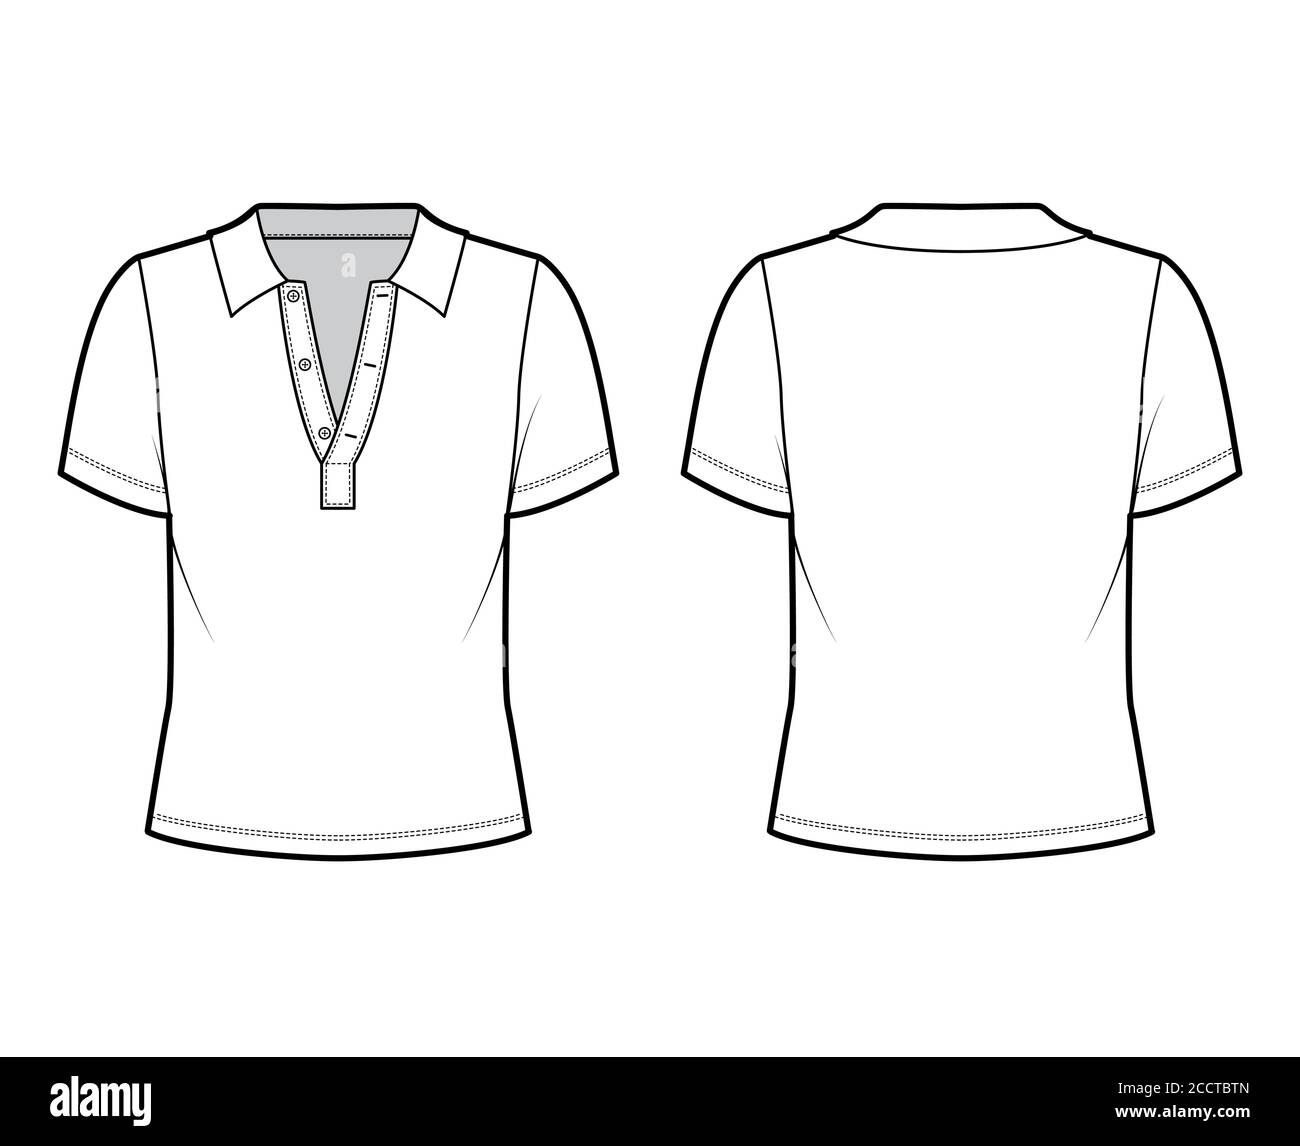 Vldnery Women's Short Sleeve V Neck Golf Shirts